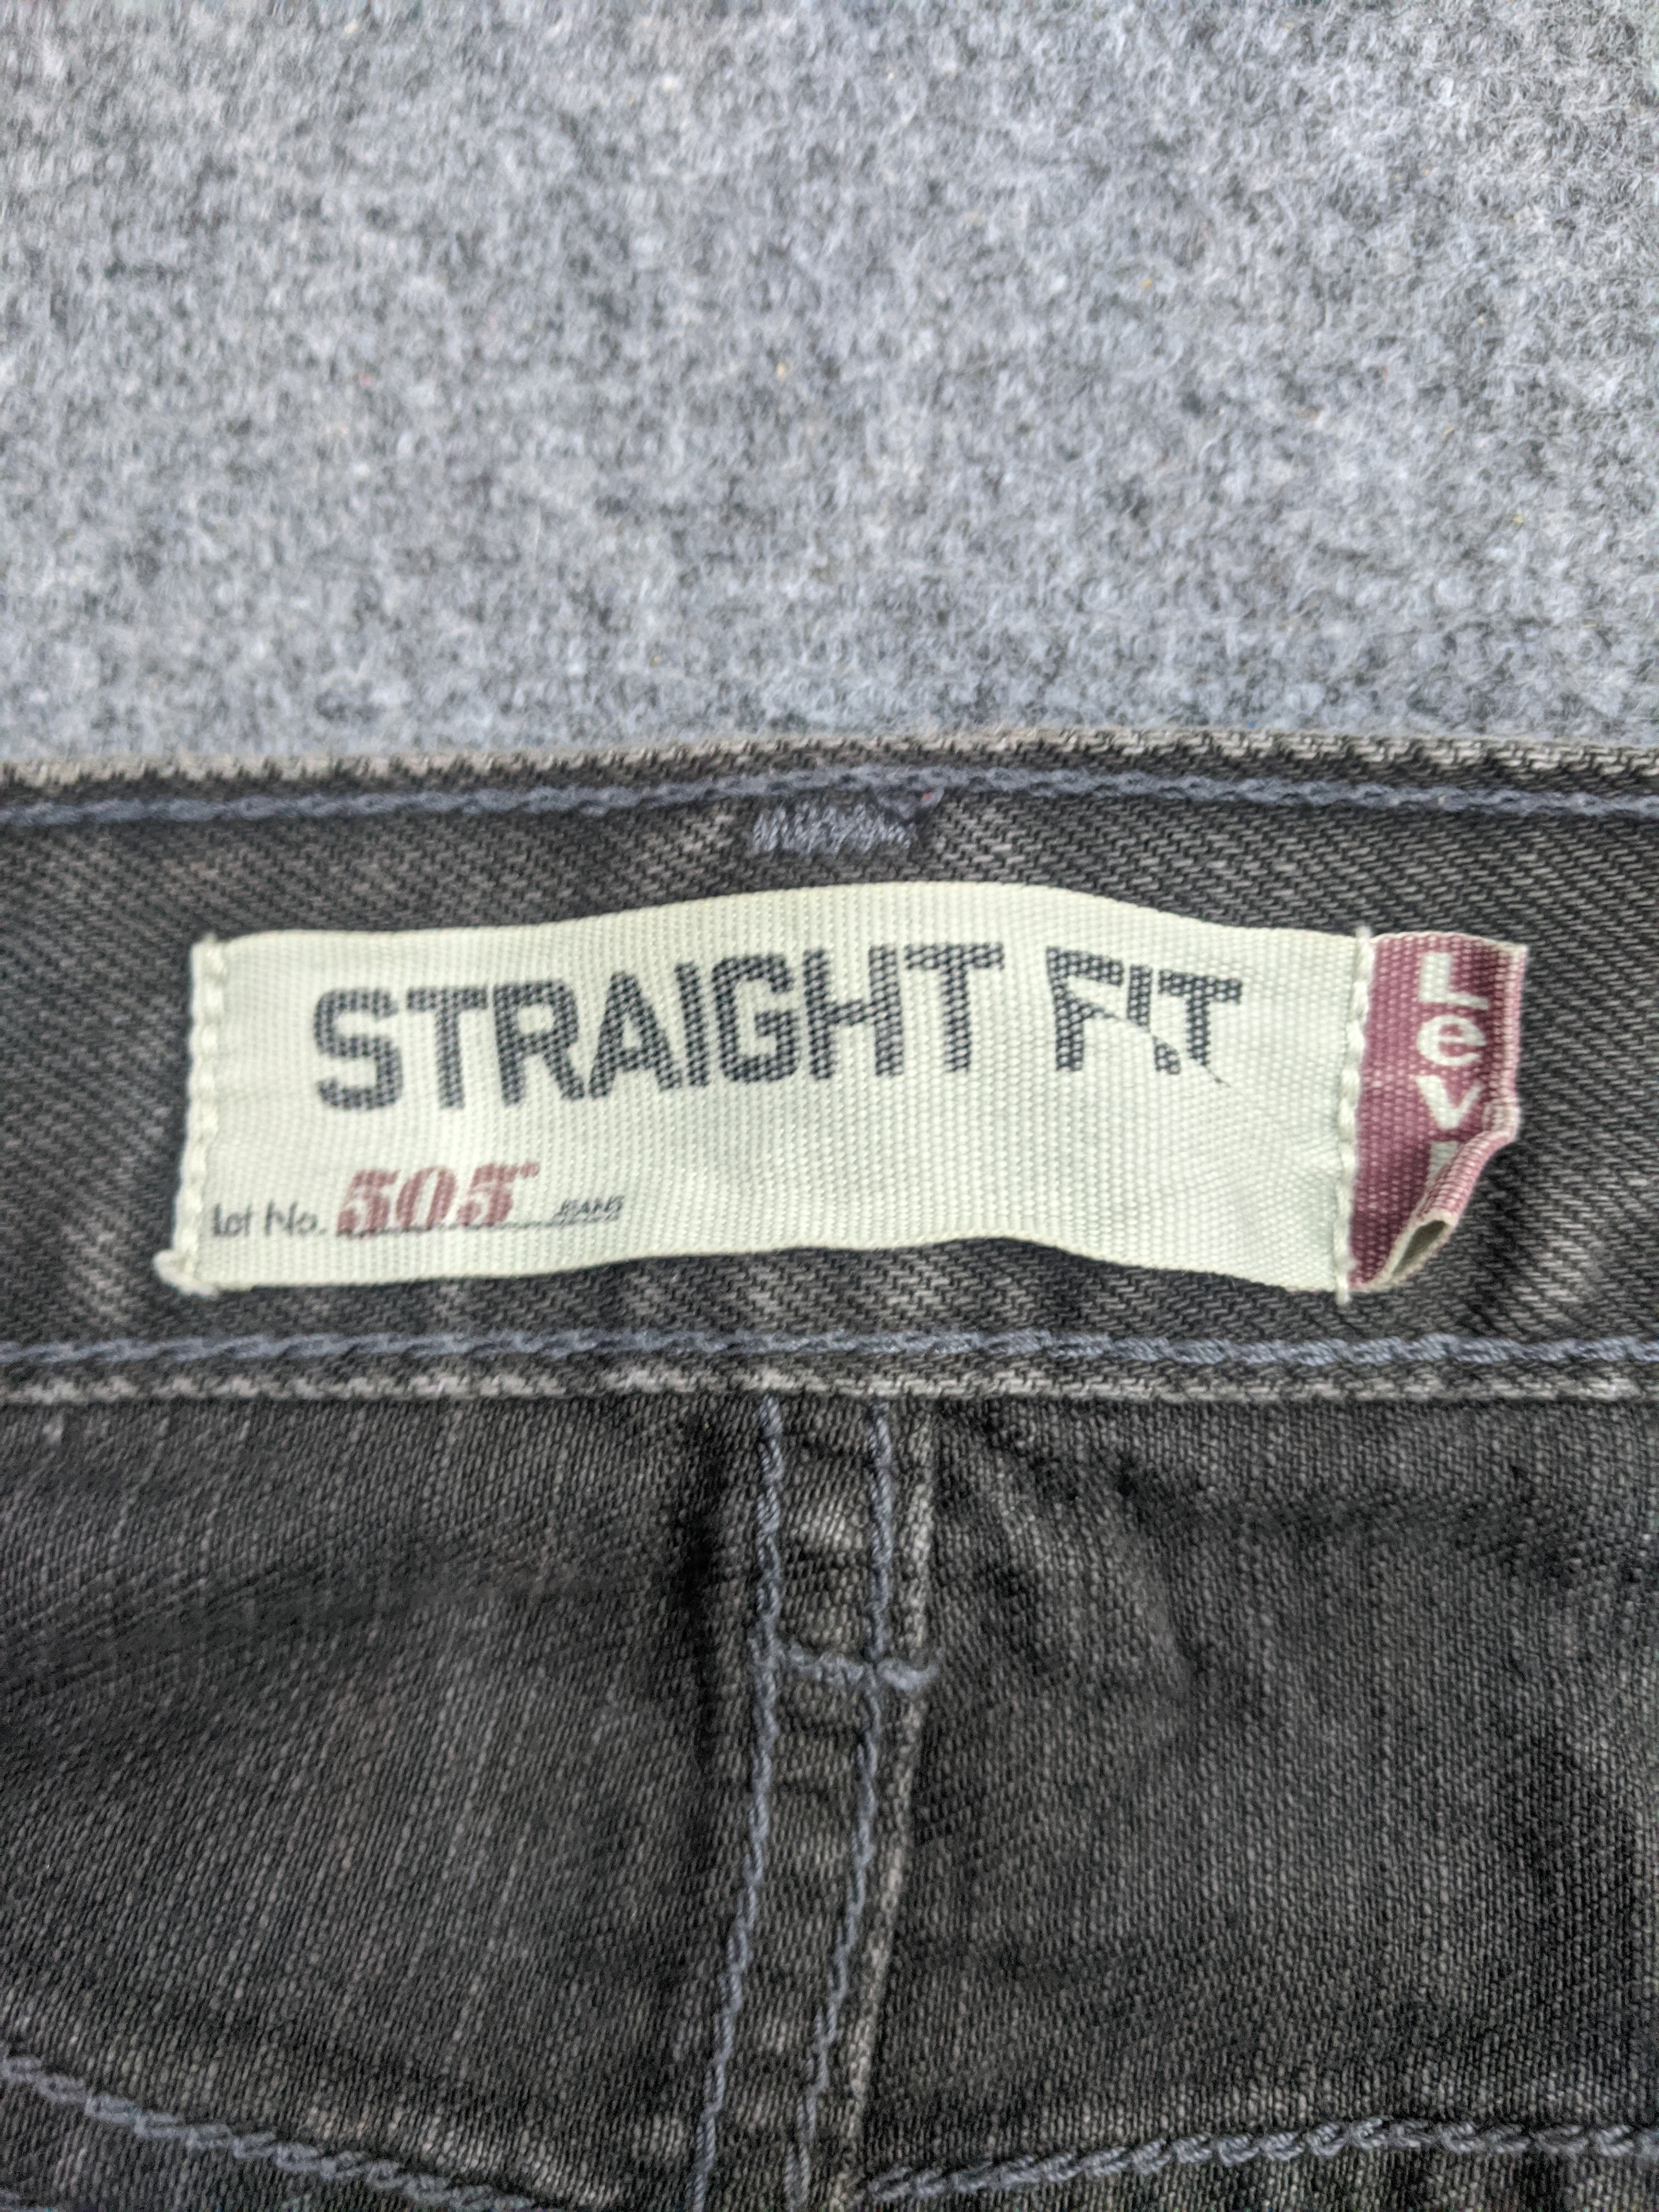 Vintage - Vintage Levis 505 Light Wash Jeans - 9